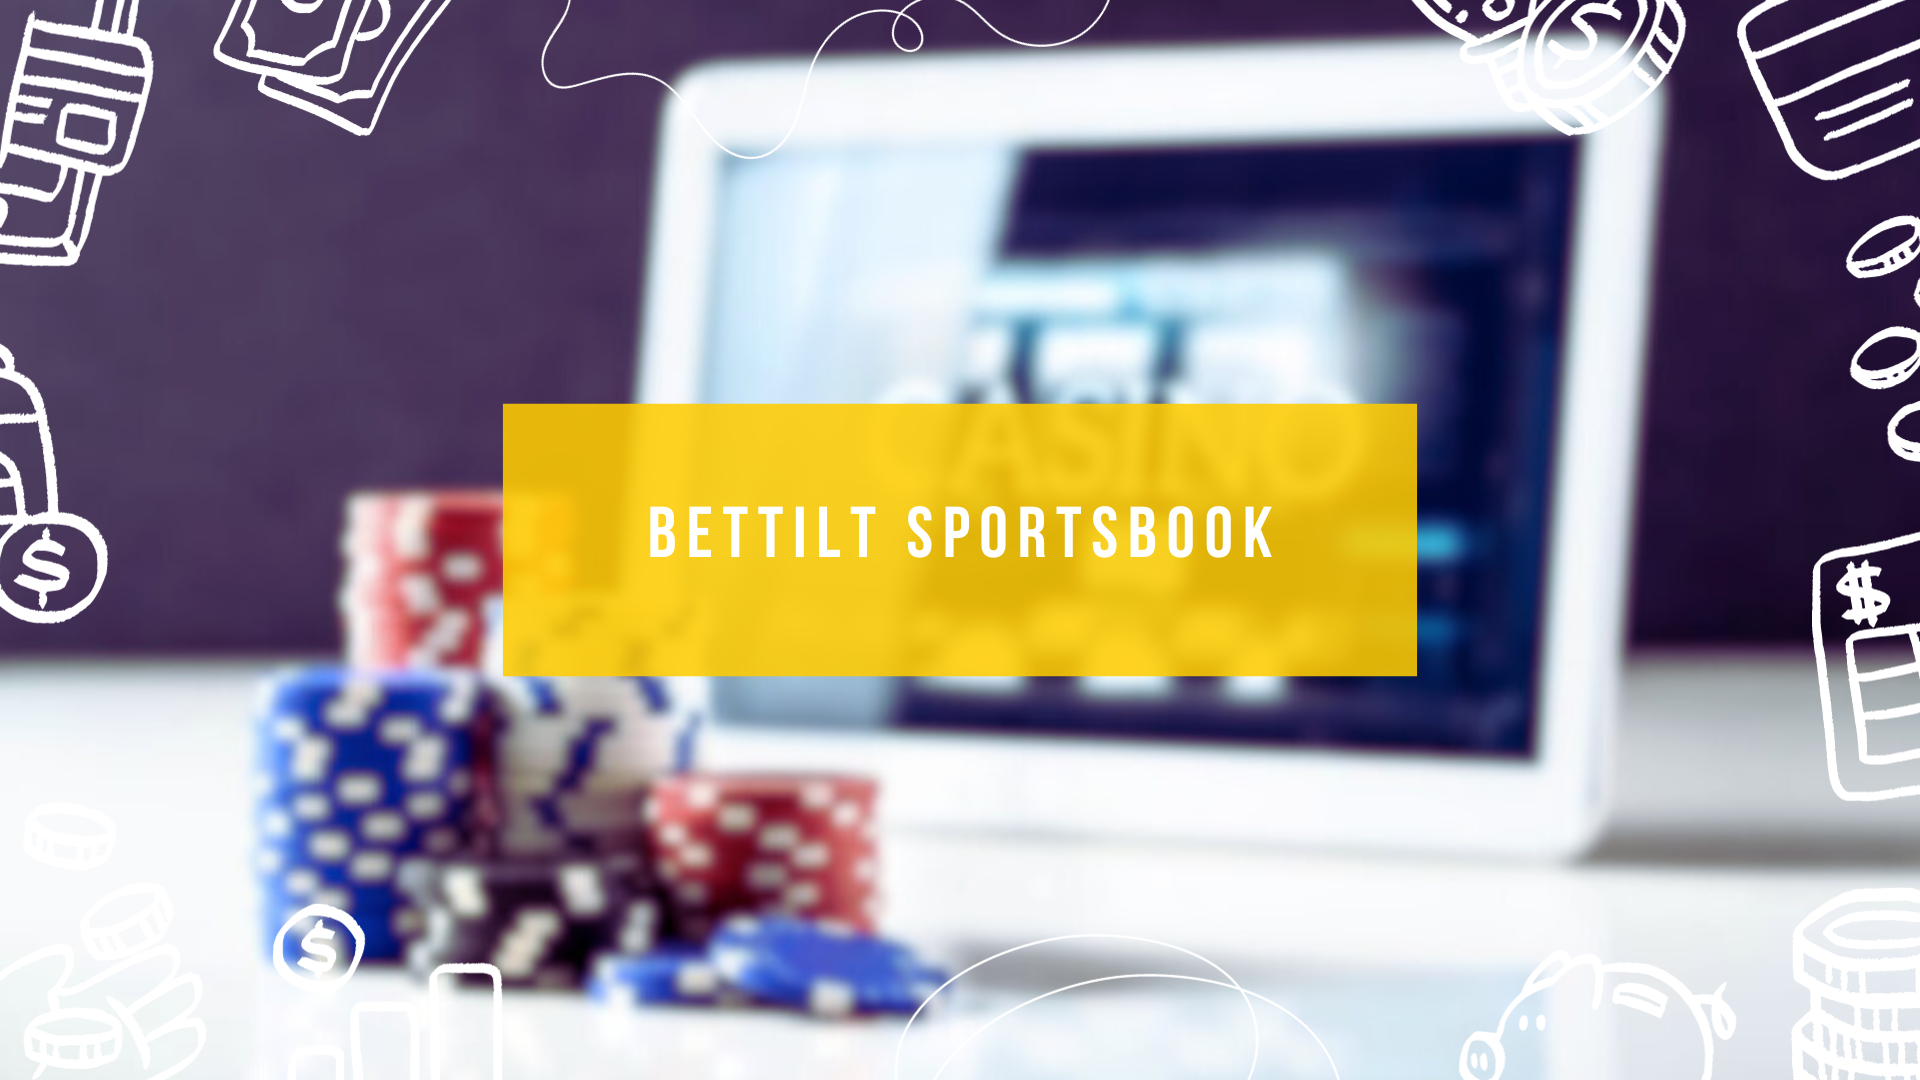 Bettilt Sportsbook